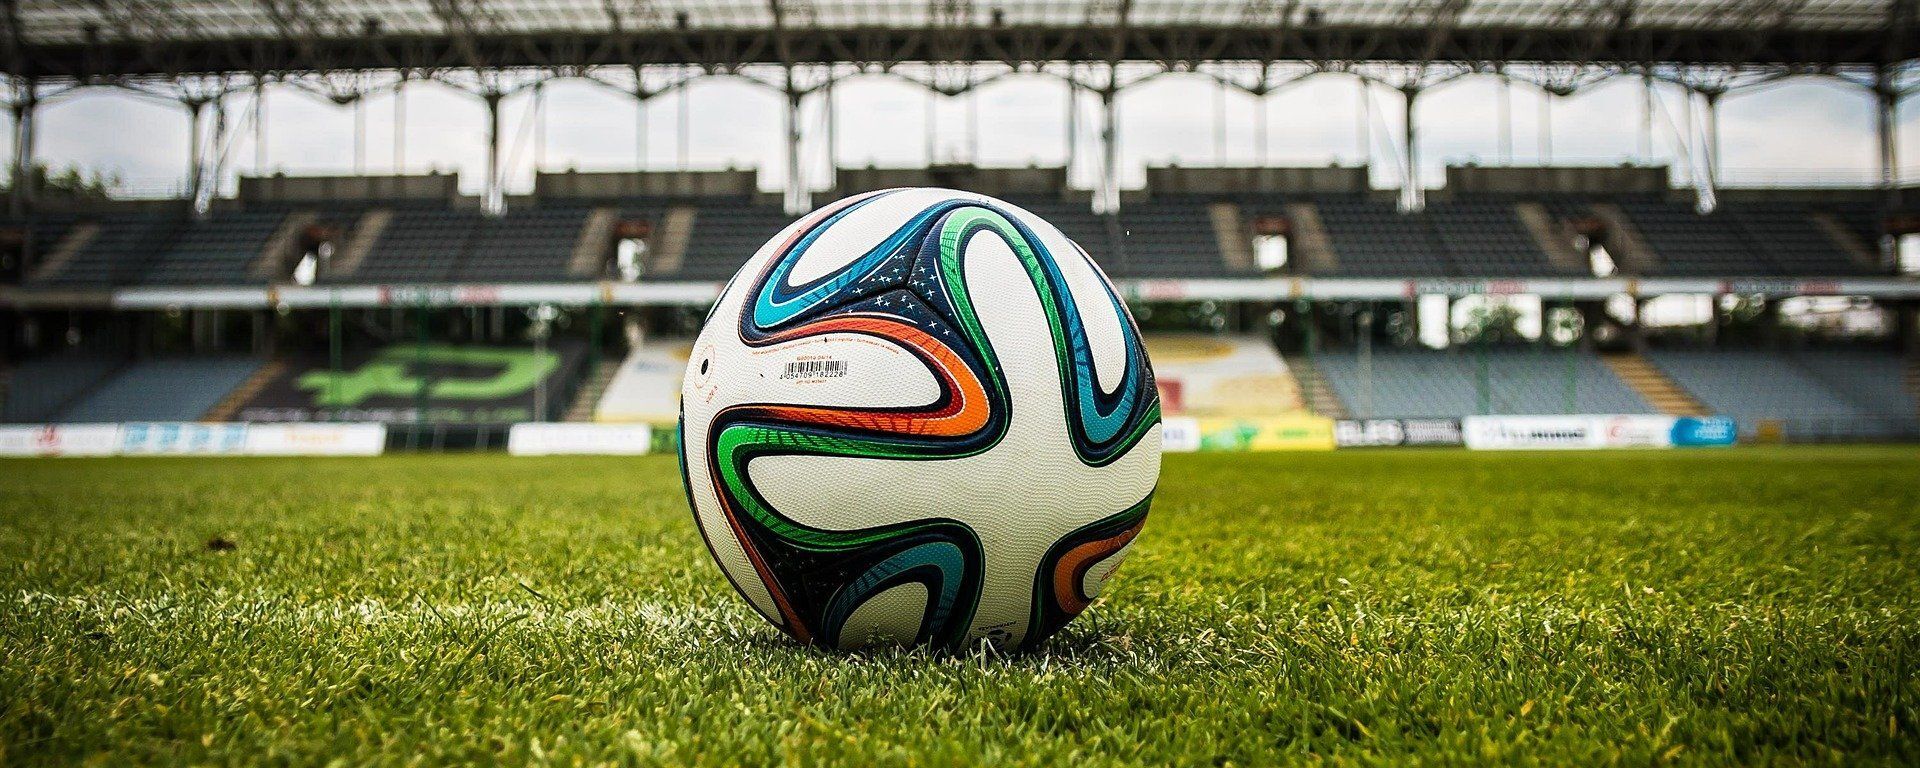 Balón de fútbol en un estadio (imagen referencial) - Sputnik Mundo, 1920, 12.05.2021